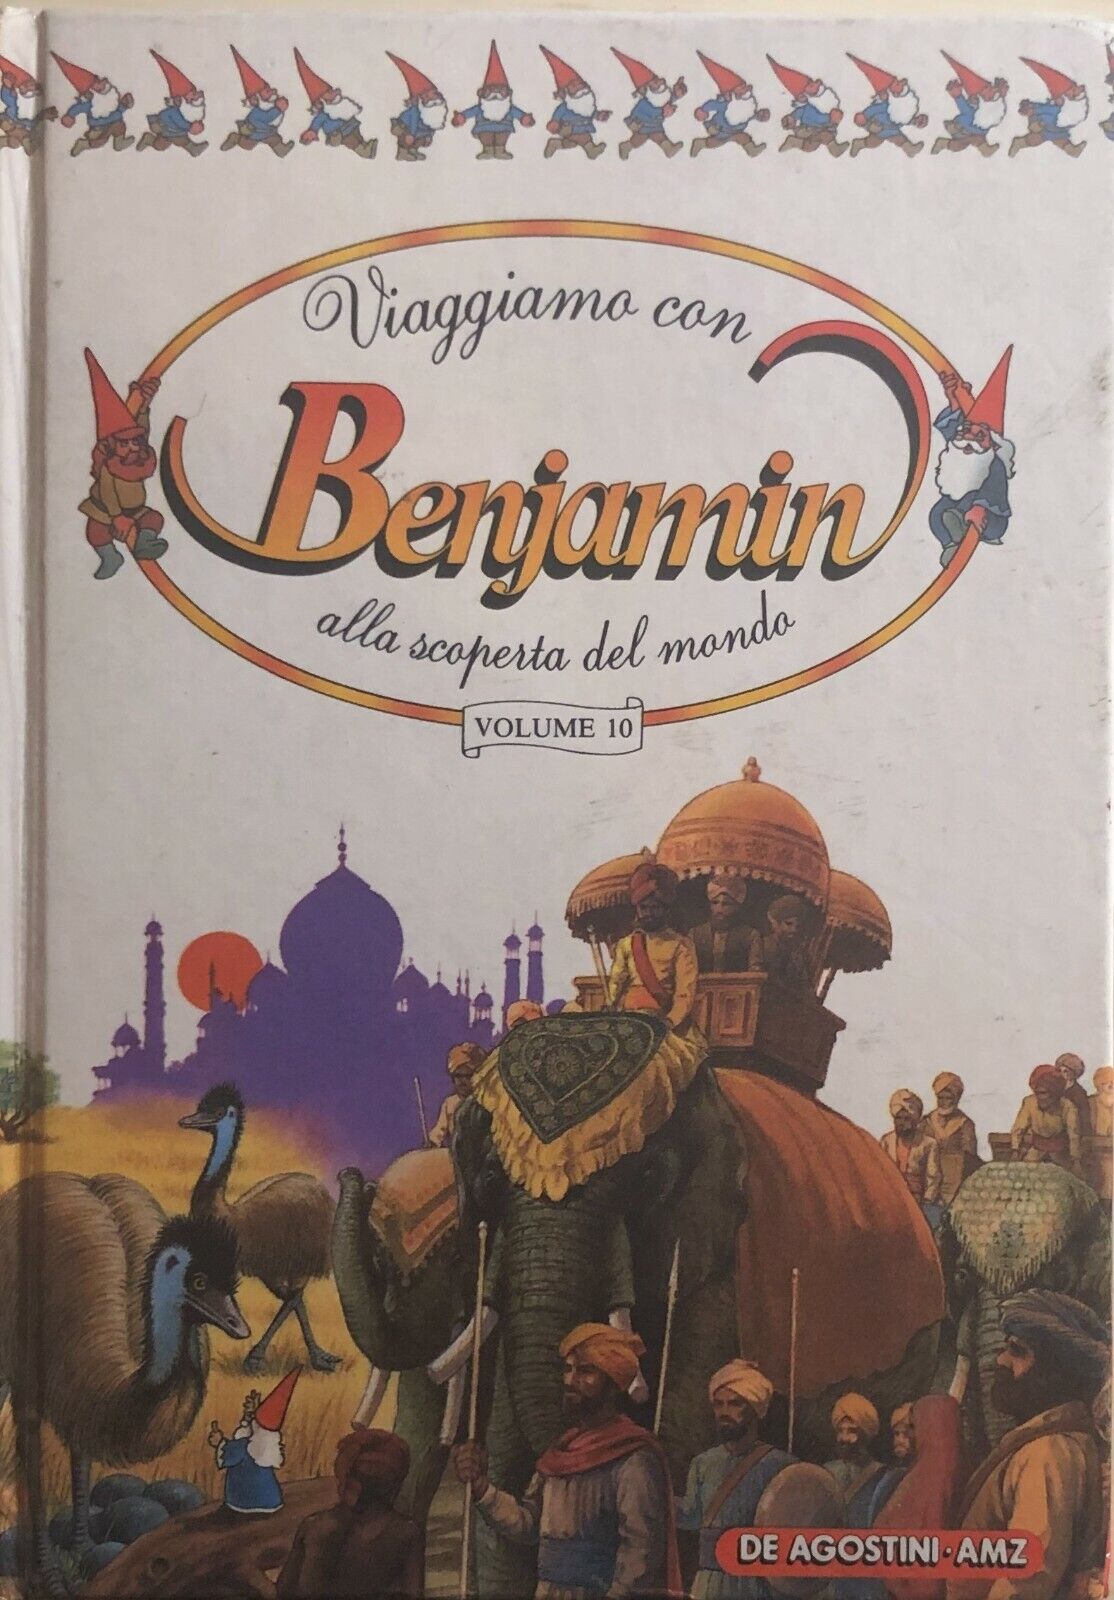 Viaggiamo con Benjamin alla scoperta del mondo 10 di Aa.vv., 1988, Deagostini